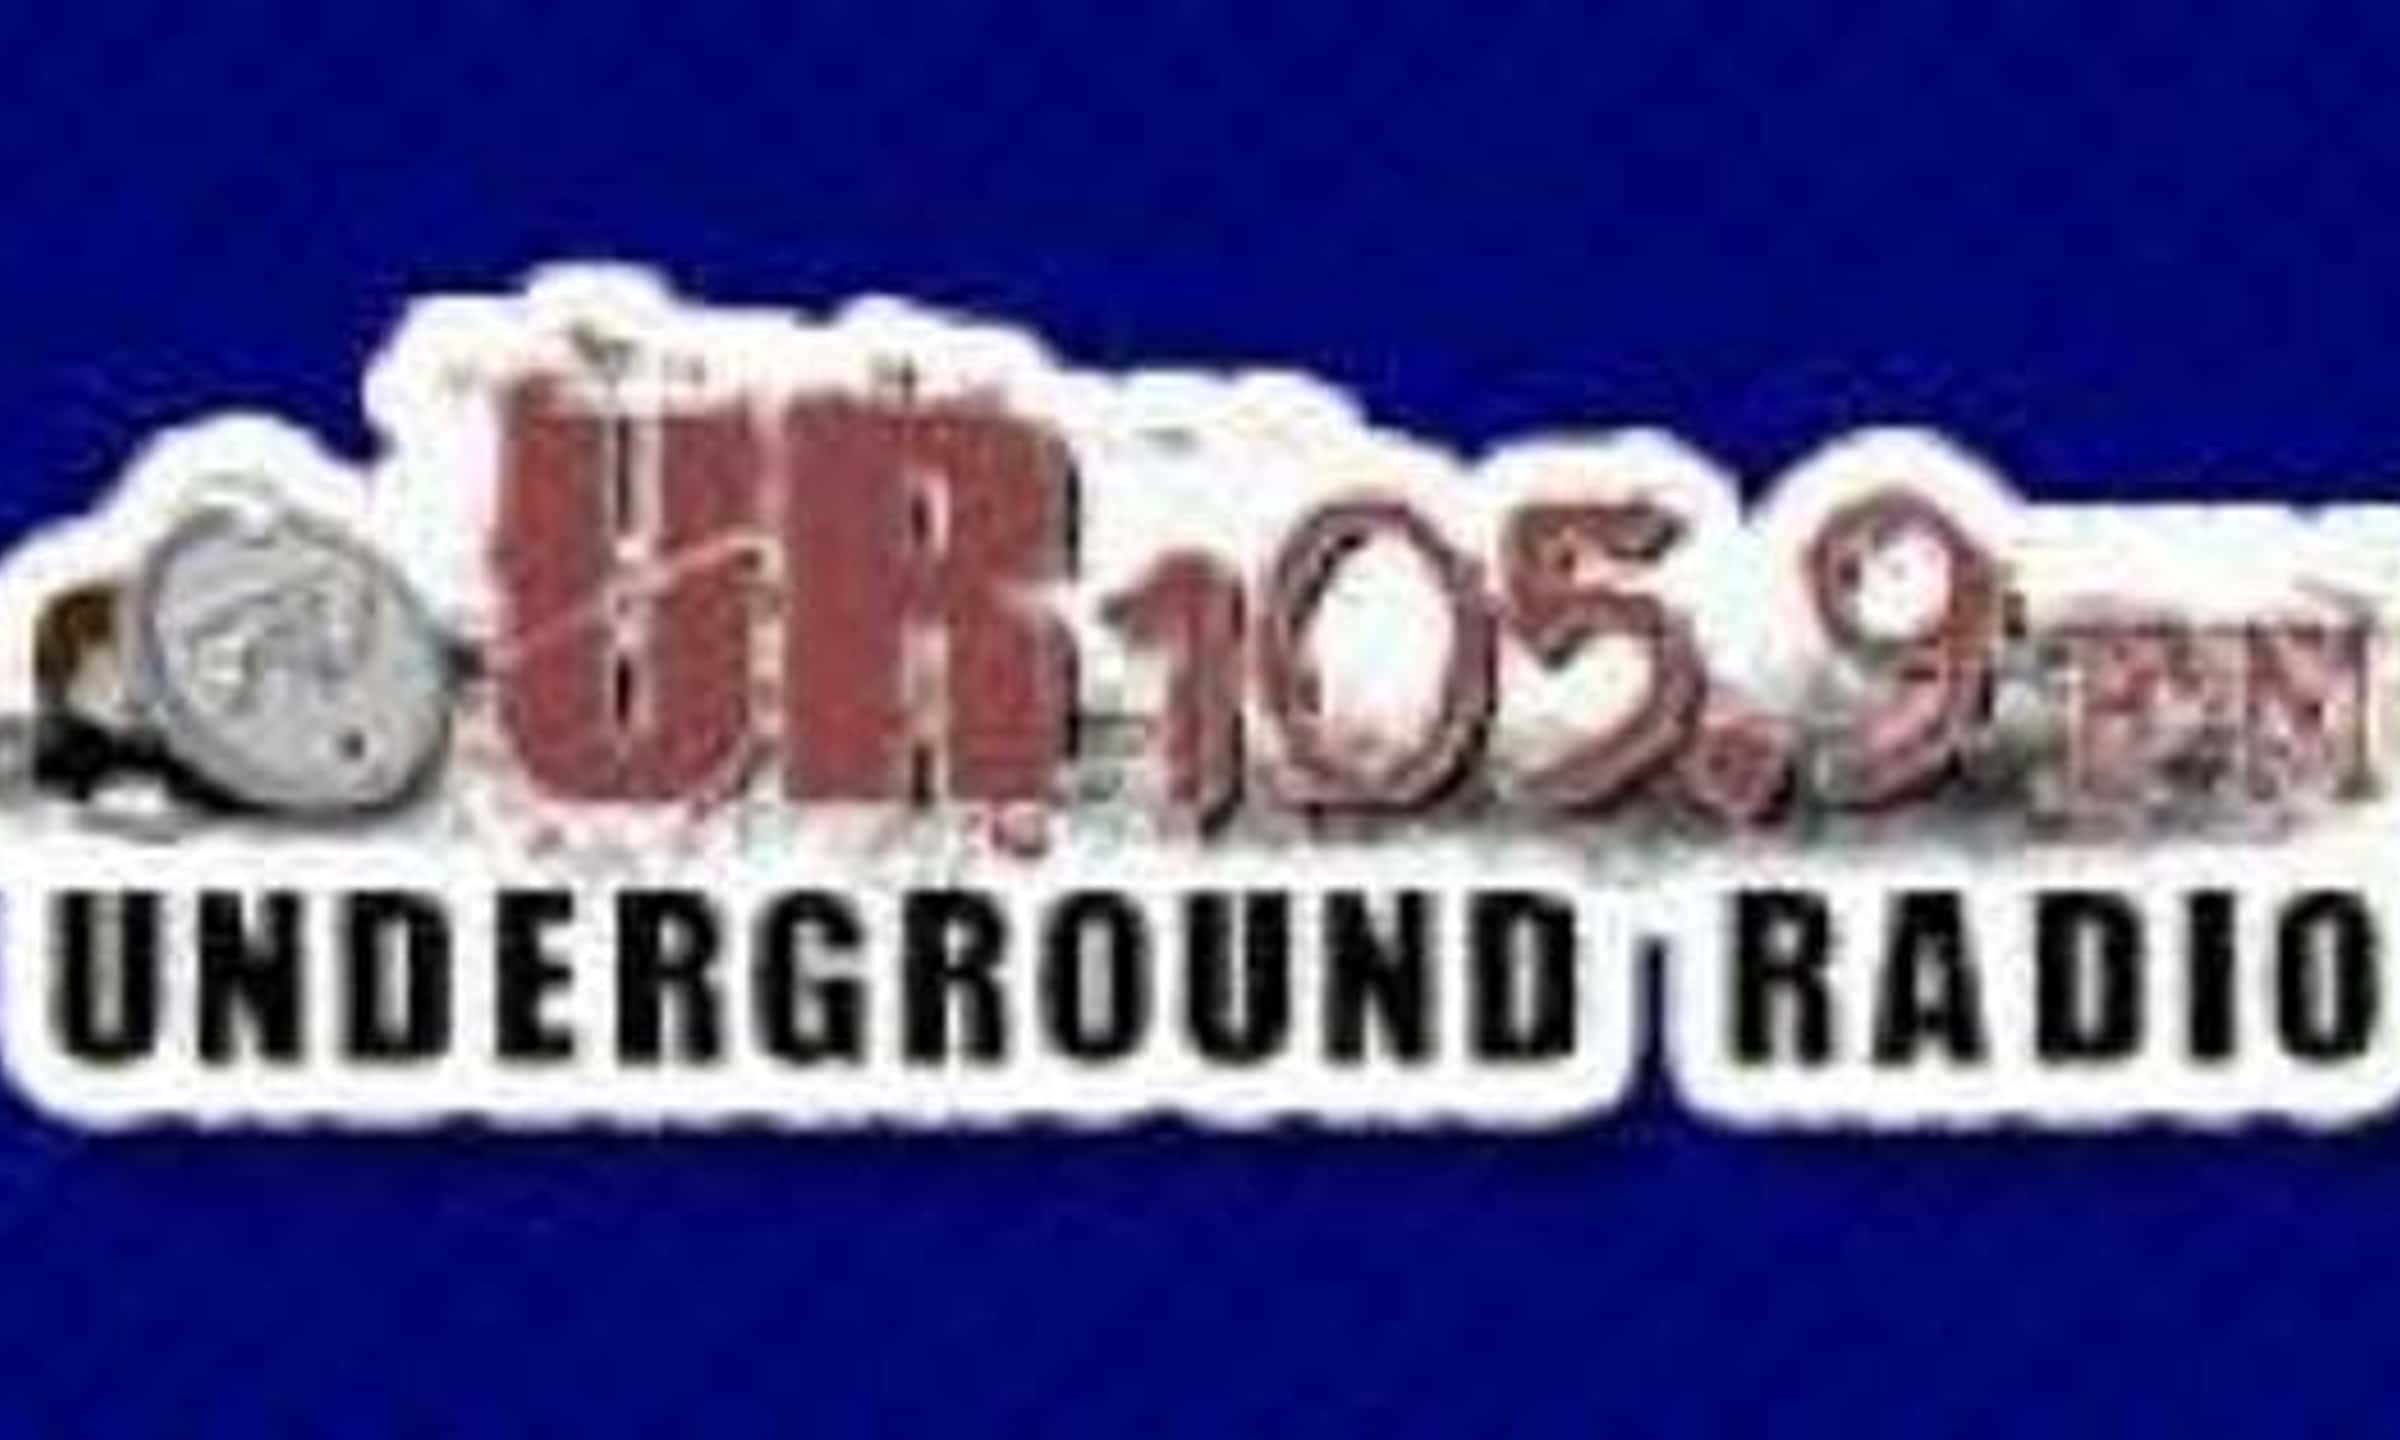 Радио черкесска 105.9. Louisiana Blues Radio. Yurtur логотип. Ur logo.